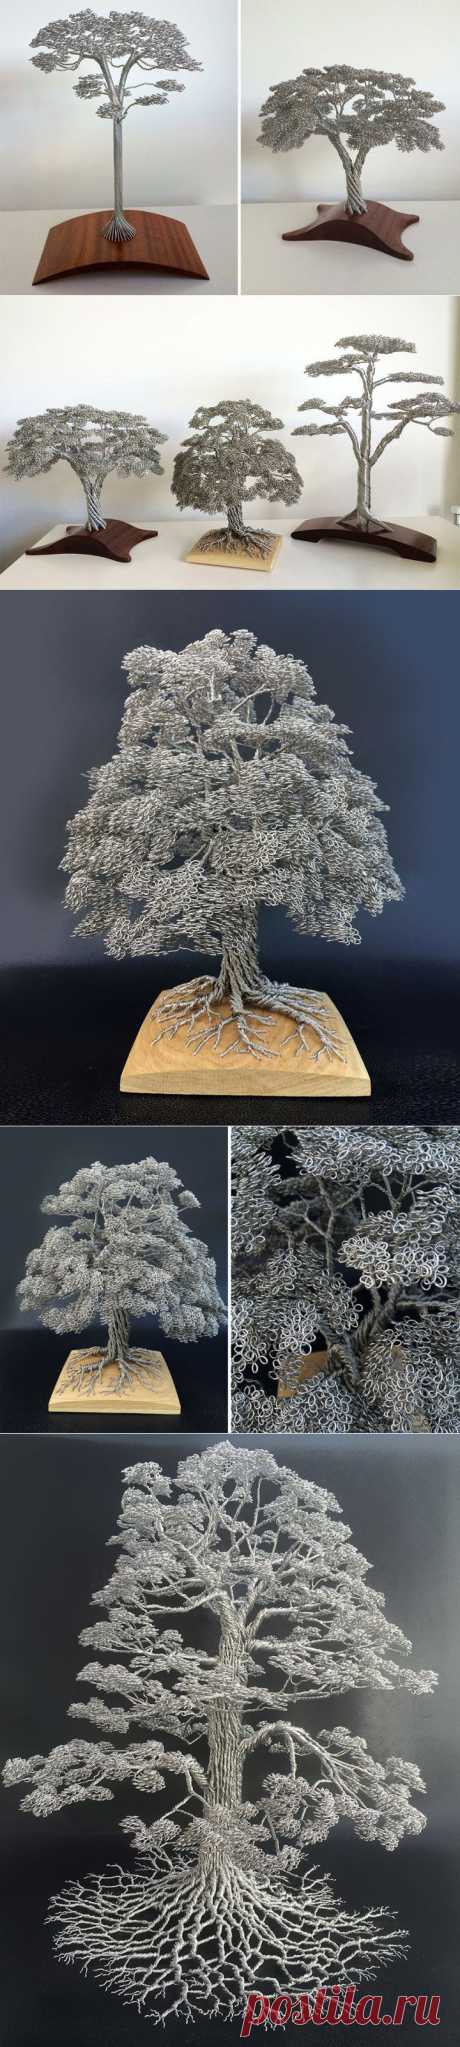 Художник создает потрясающие скульптуры деревьев из обычной проволоки | VICER.RU